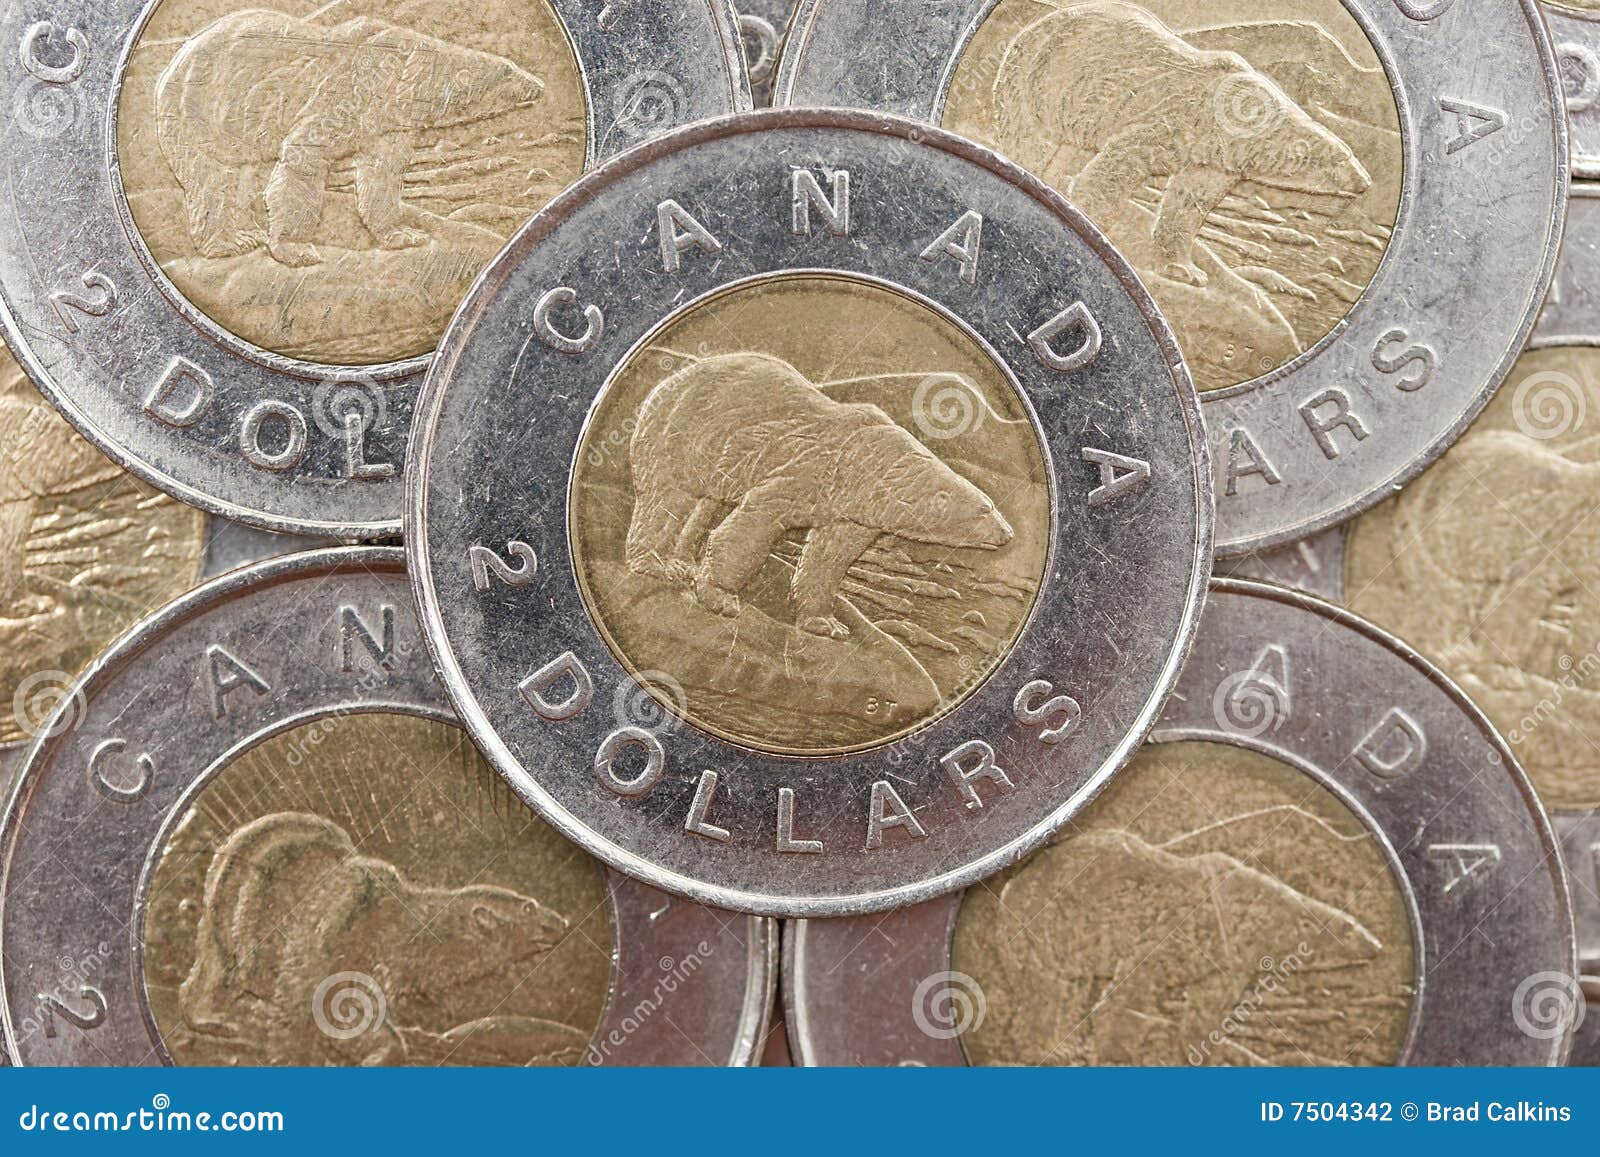 dp3197，1991年，加拿大（Canada）20 元紙幣，約91%新。 | Yahoo奇摩拍賣